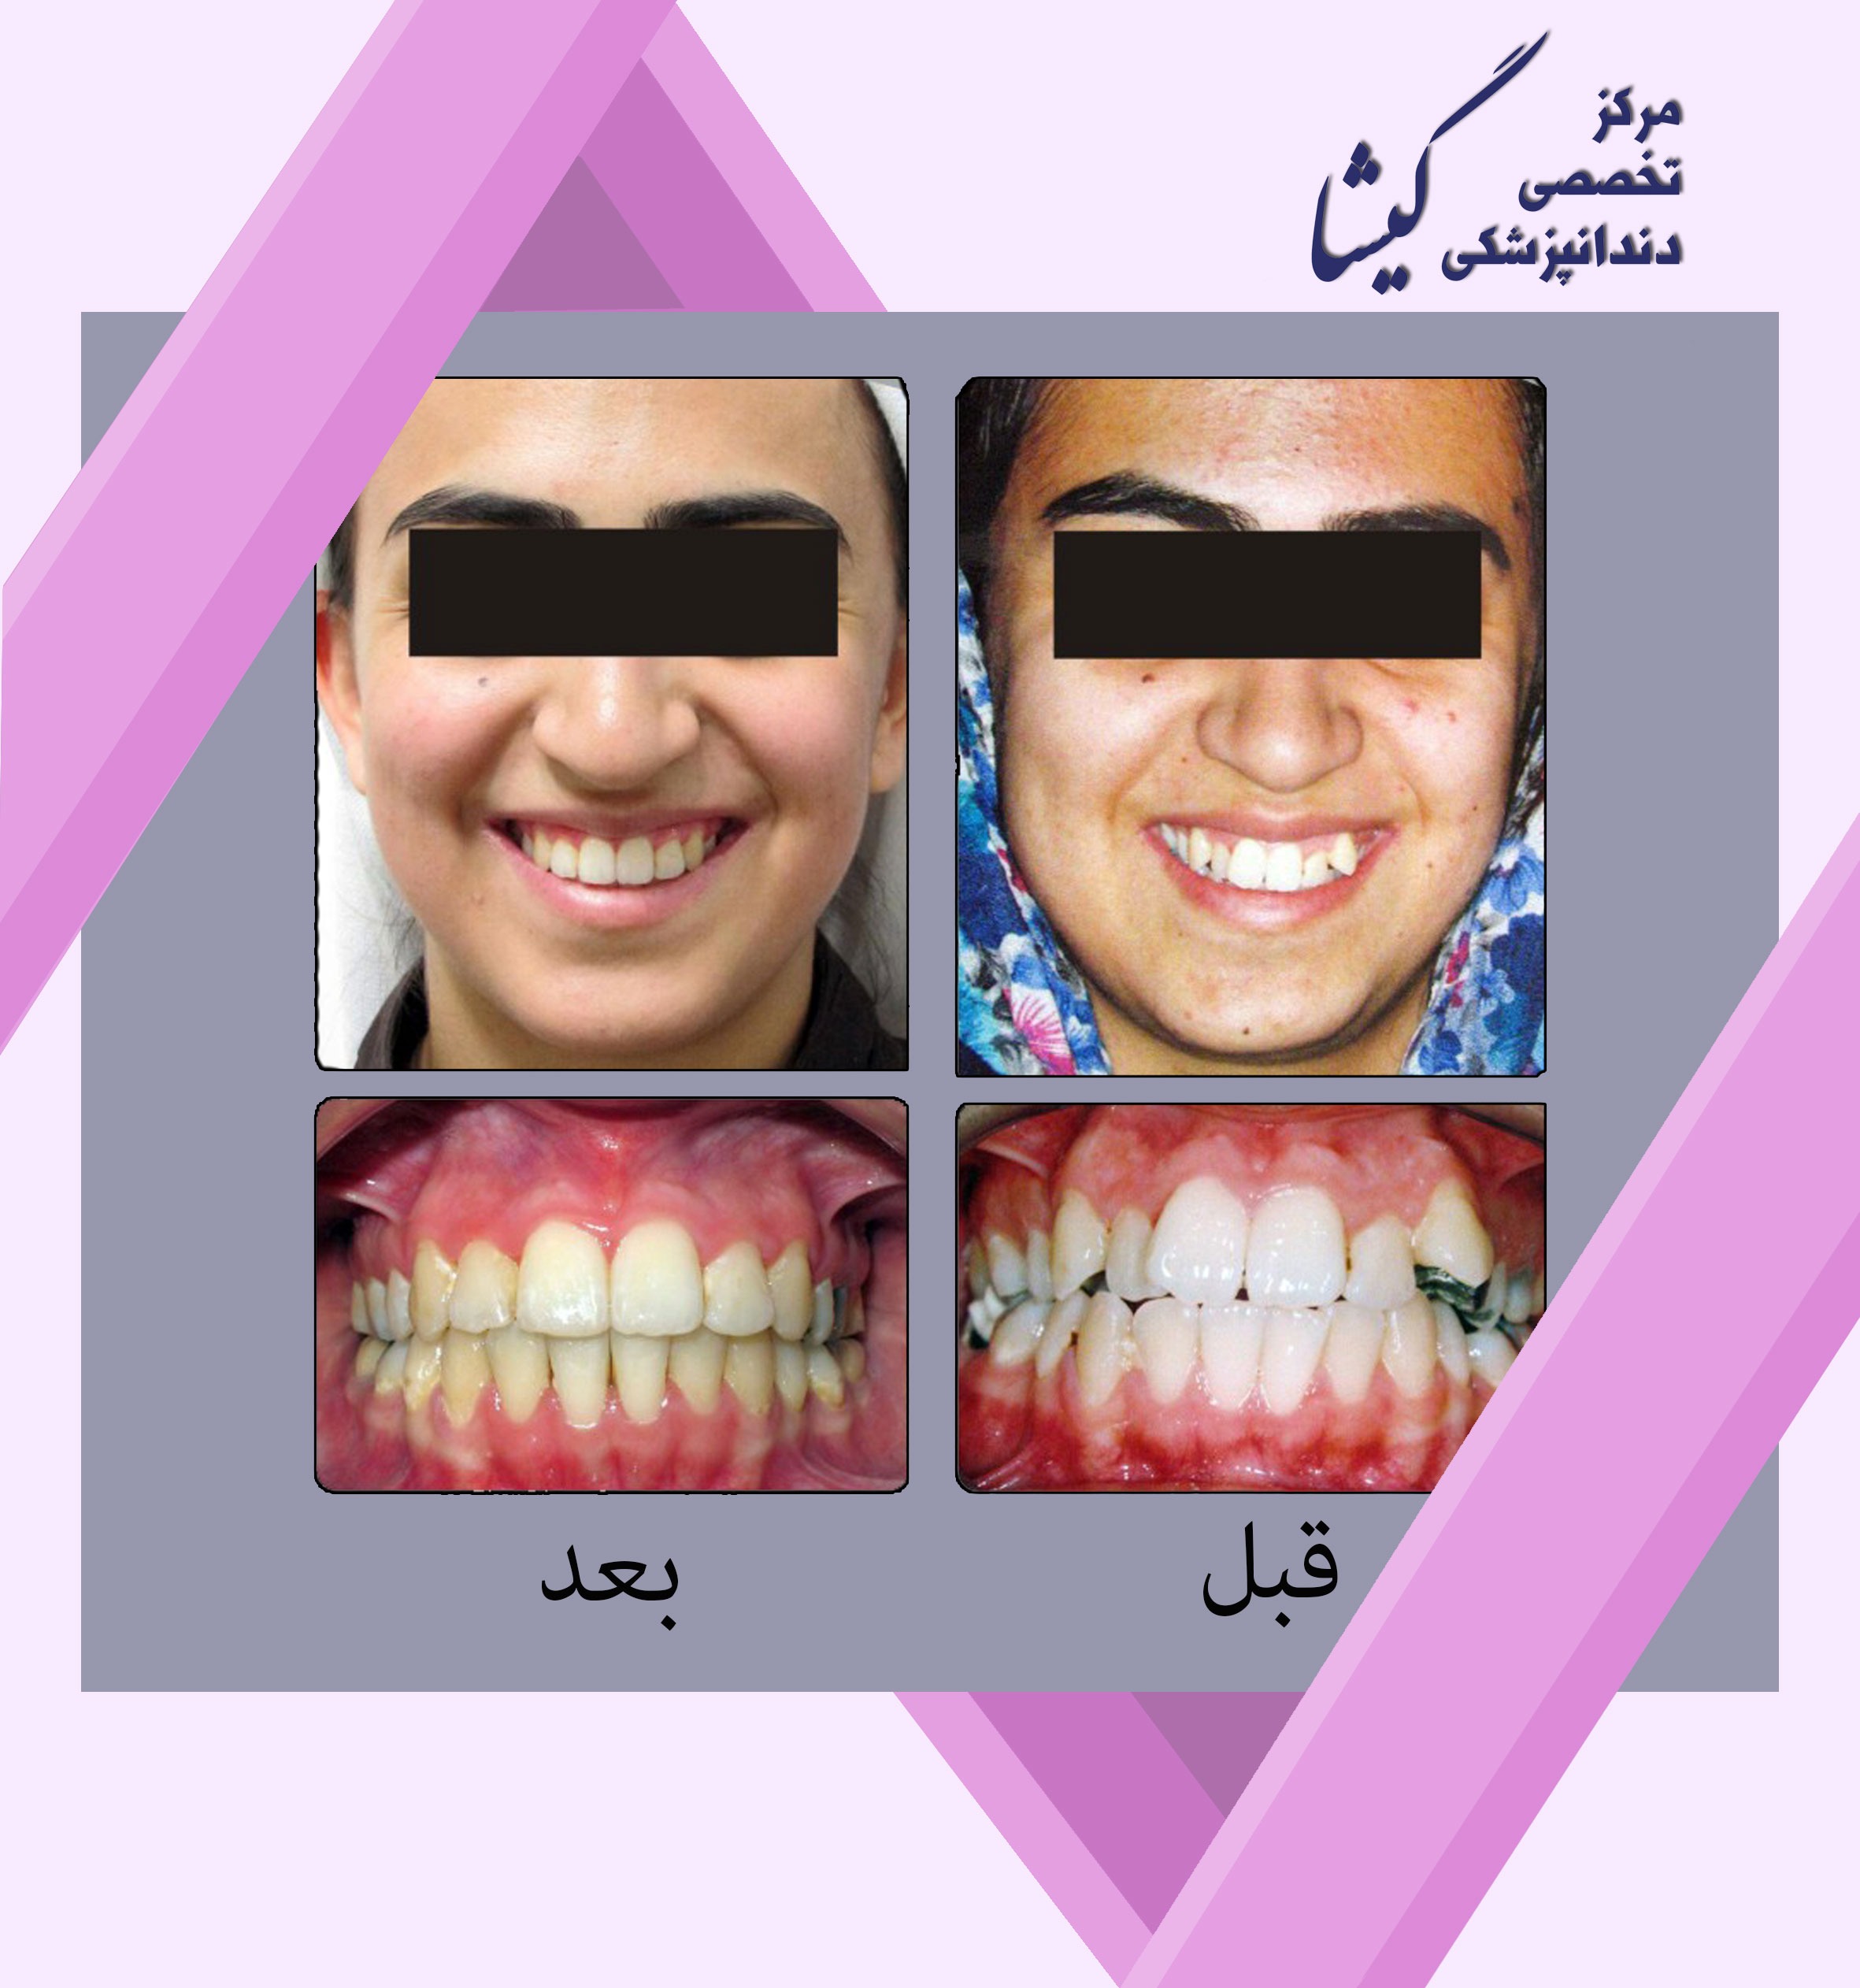 درمان ارتودنسي بيمار با بيرون زدگي دندان نيش و نامرتبي دندانها .